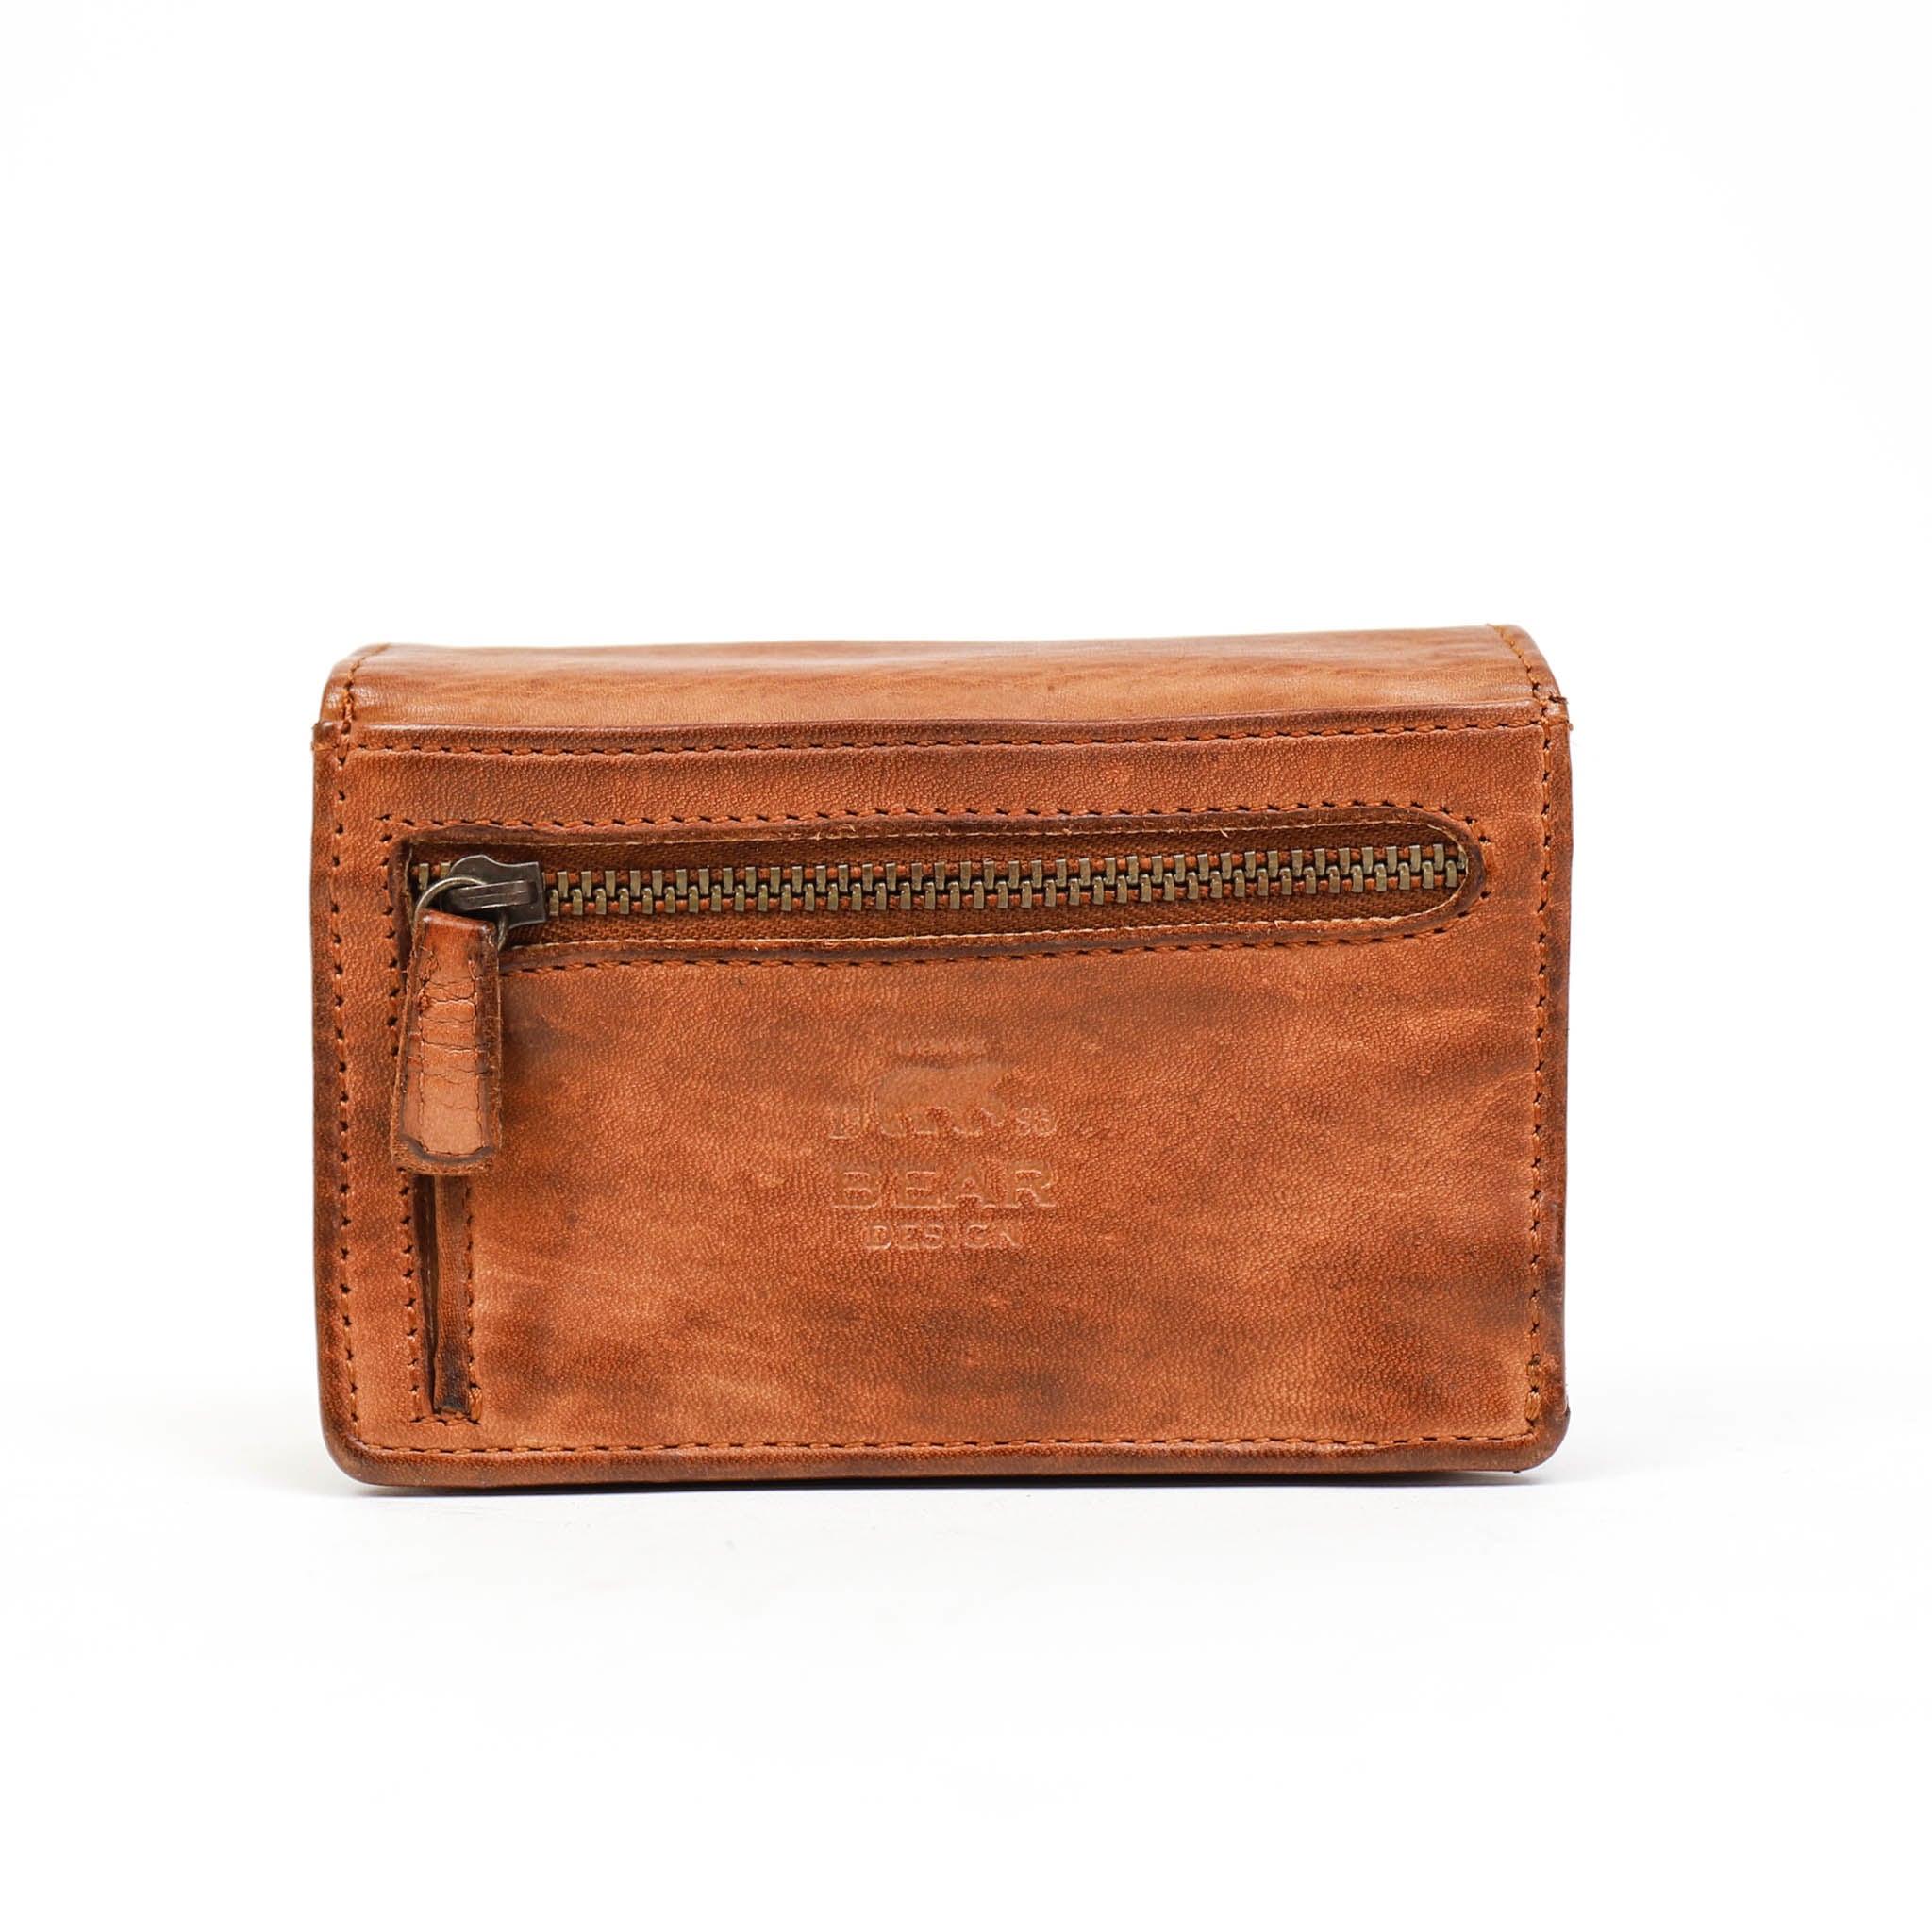 Wrap wallet 'Nina' cognac - CL 16212